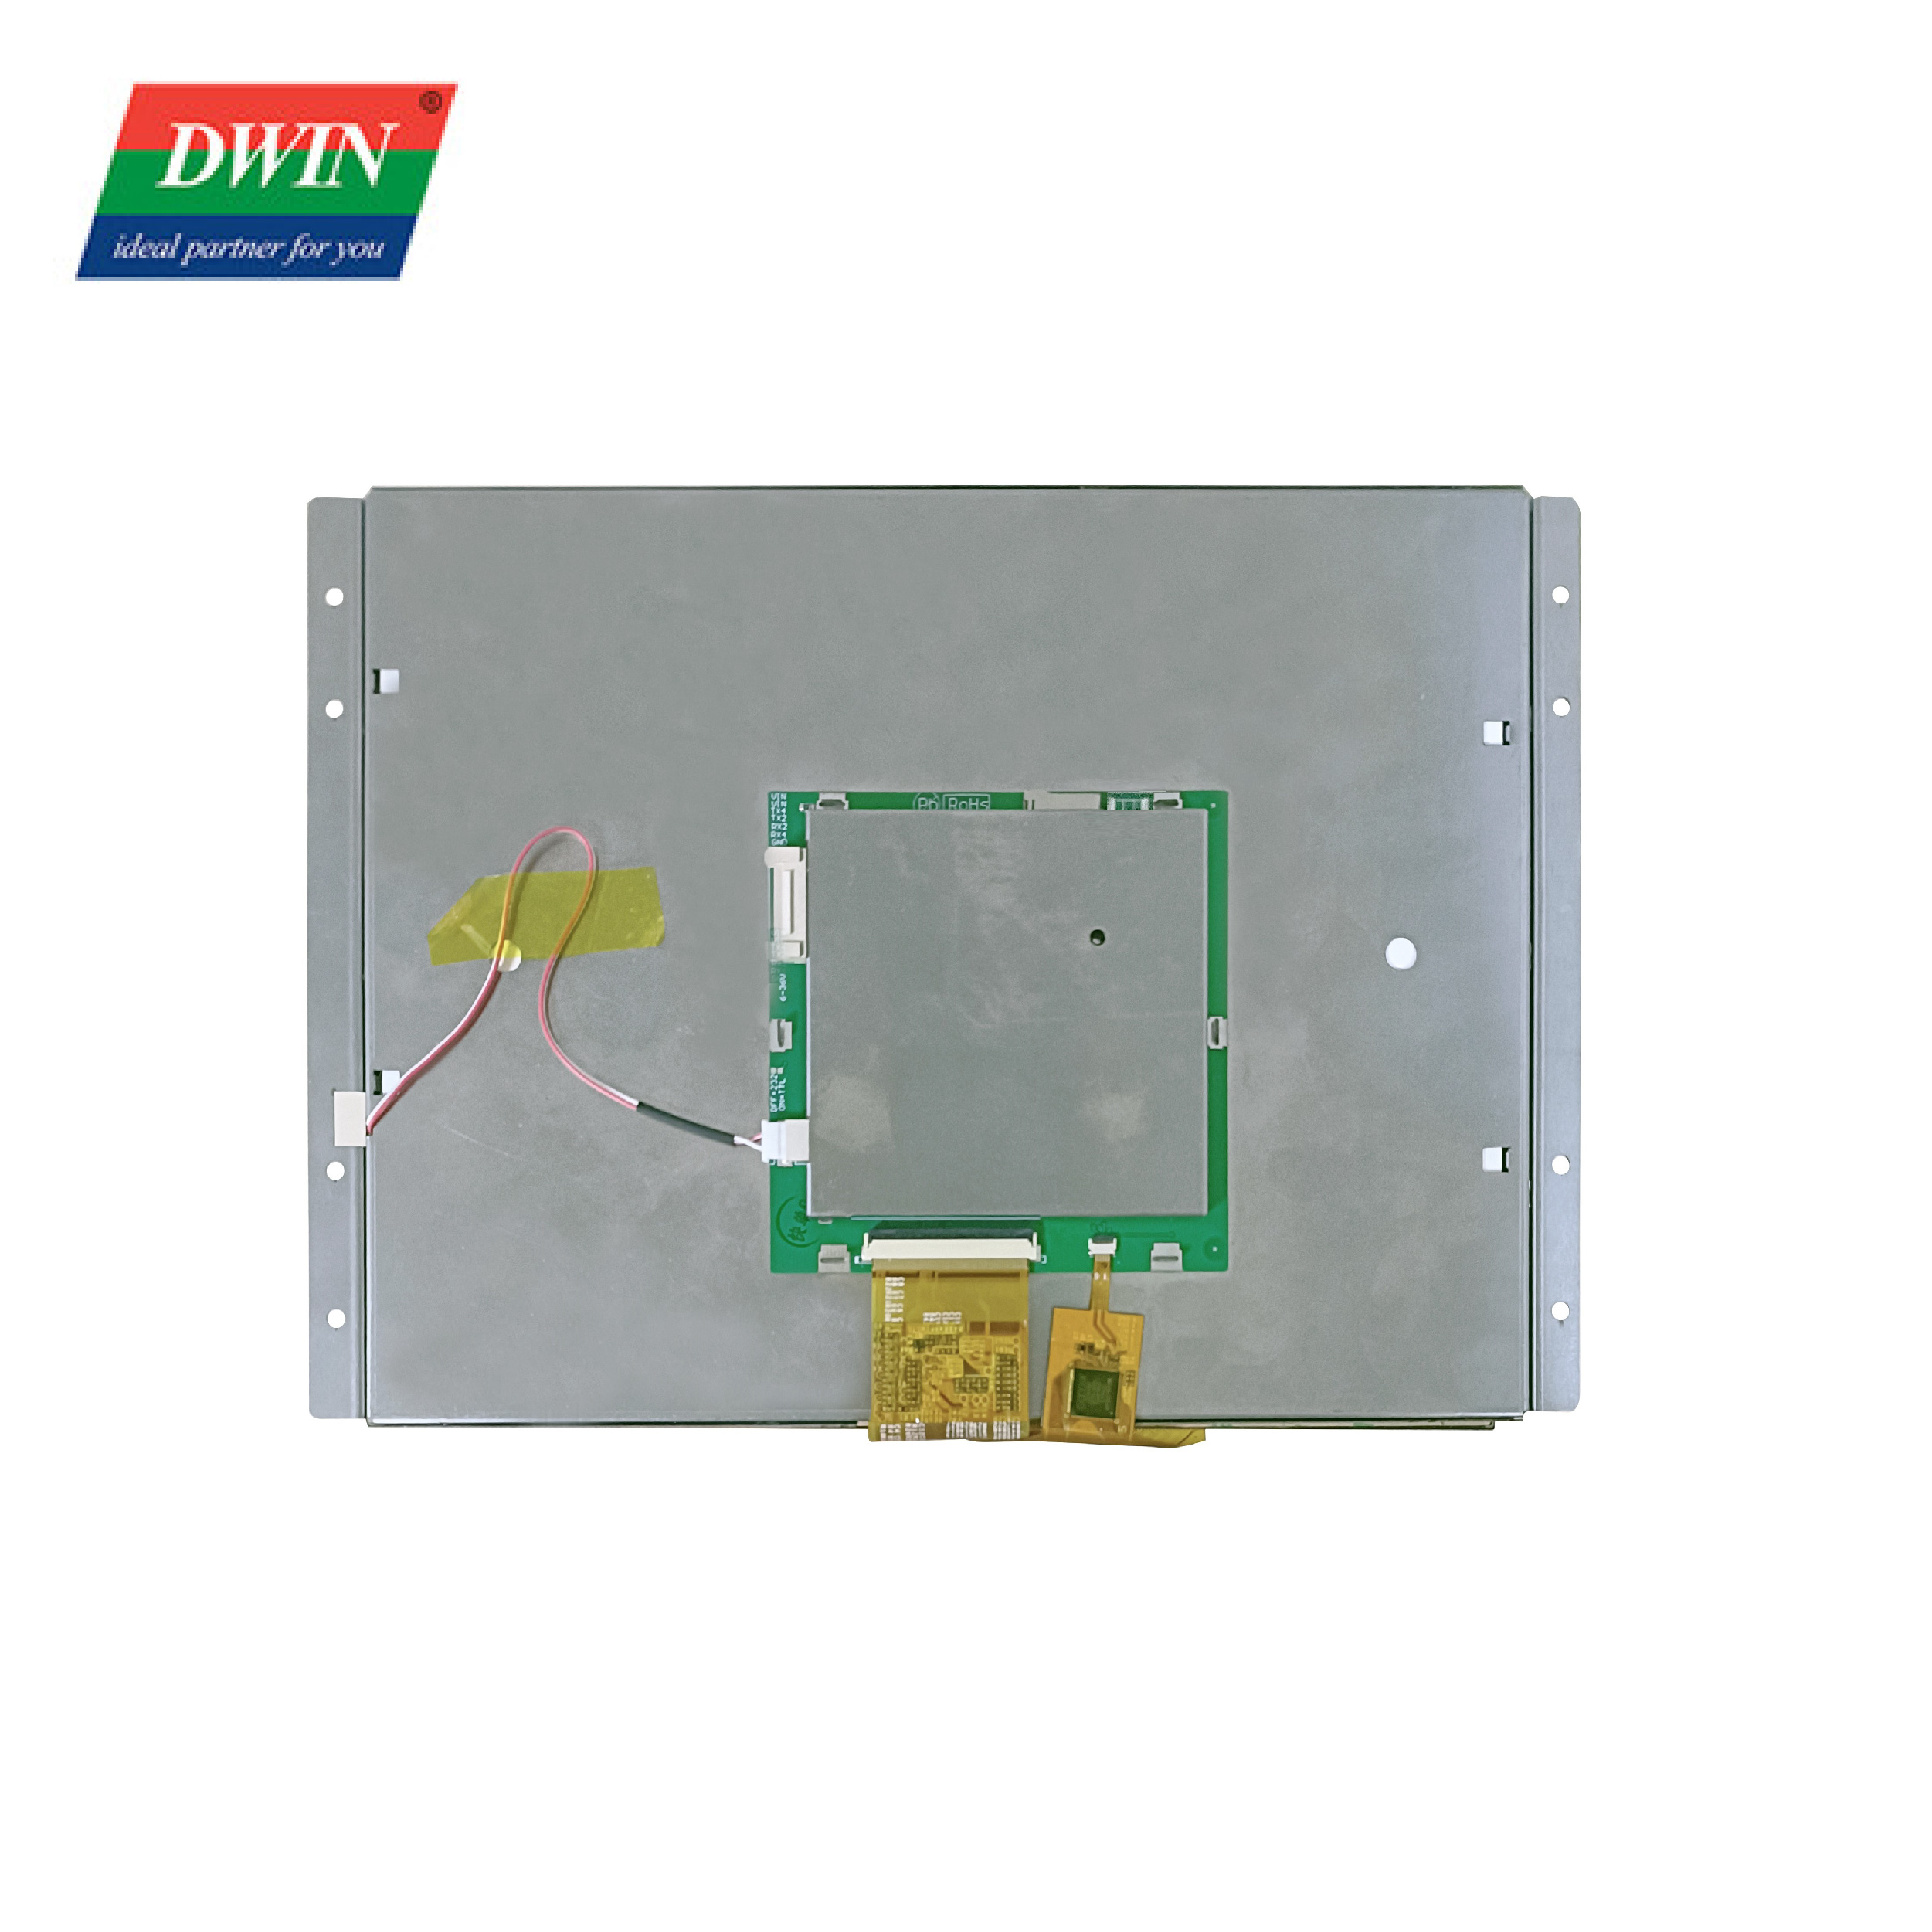 10.4 pous LCD Touch Panel DMG80600L104_01W (klas Konsomatè)